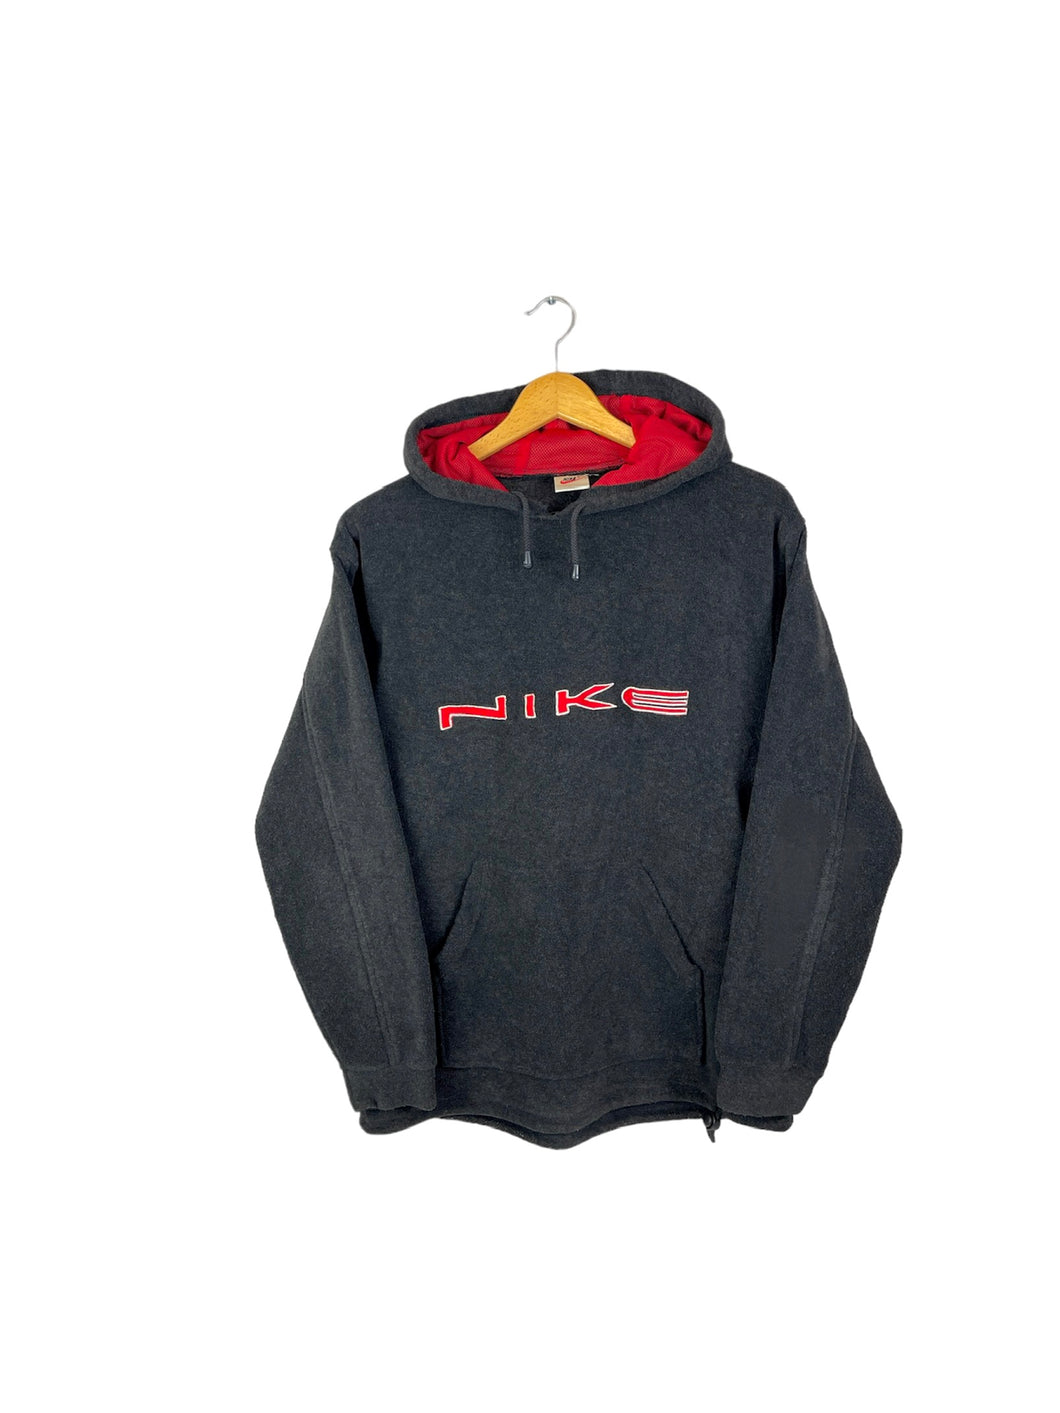 Nike Bootleg Fleece Sweatshirt - Medium